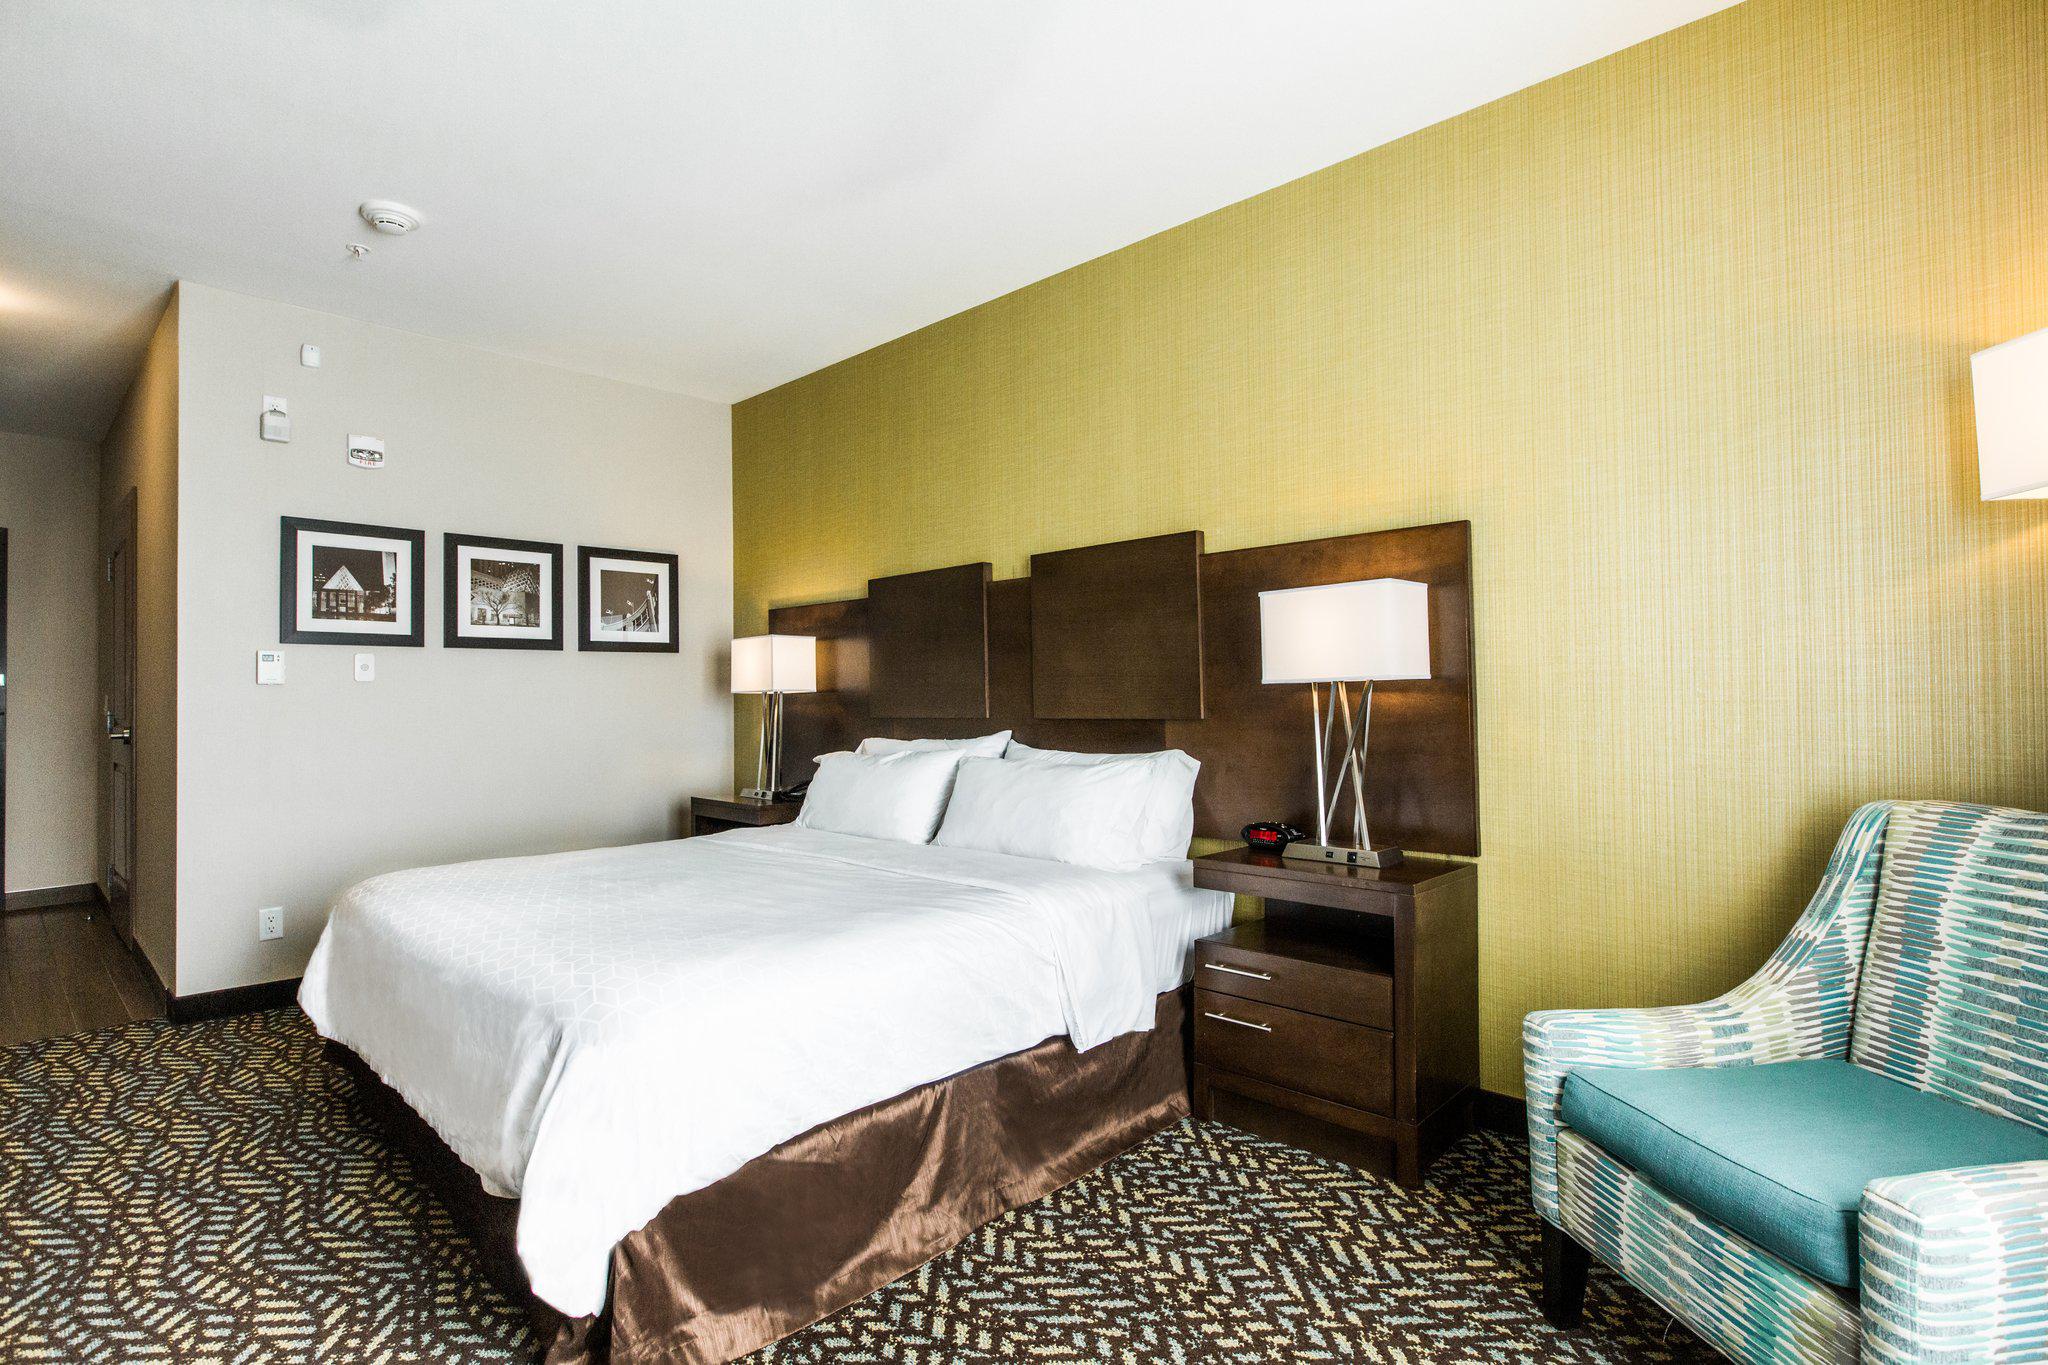 Holiday Inn Express & Suites Spruce Grove - Stony Plain, an IHG Hotel Spruce Grove (780)571-1101